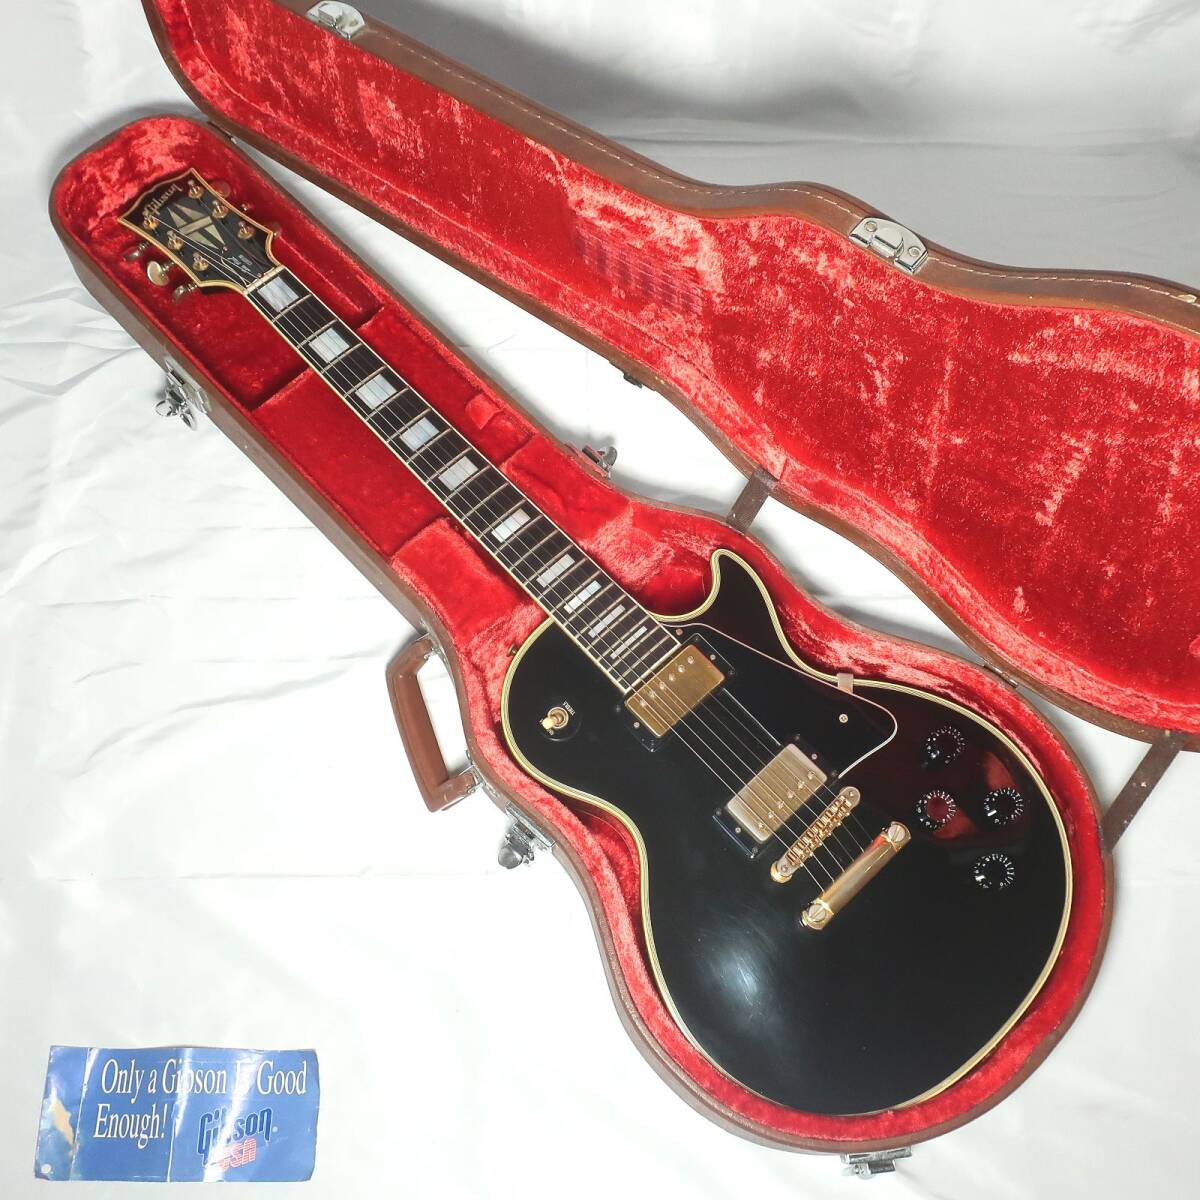 1998年製 Gibson レスポールカスタム ハードケース付 エレキギター エボニー指板 ギブソン 楽器/170サイズ【試奏動画あり】の画像1